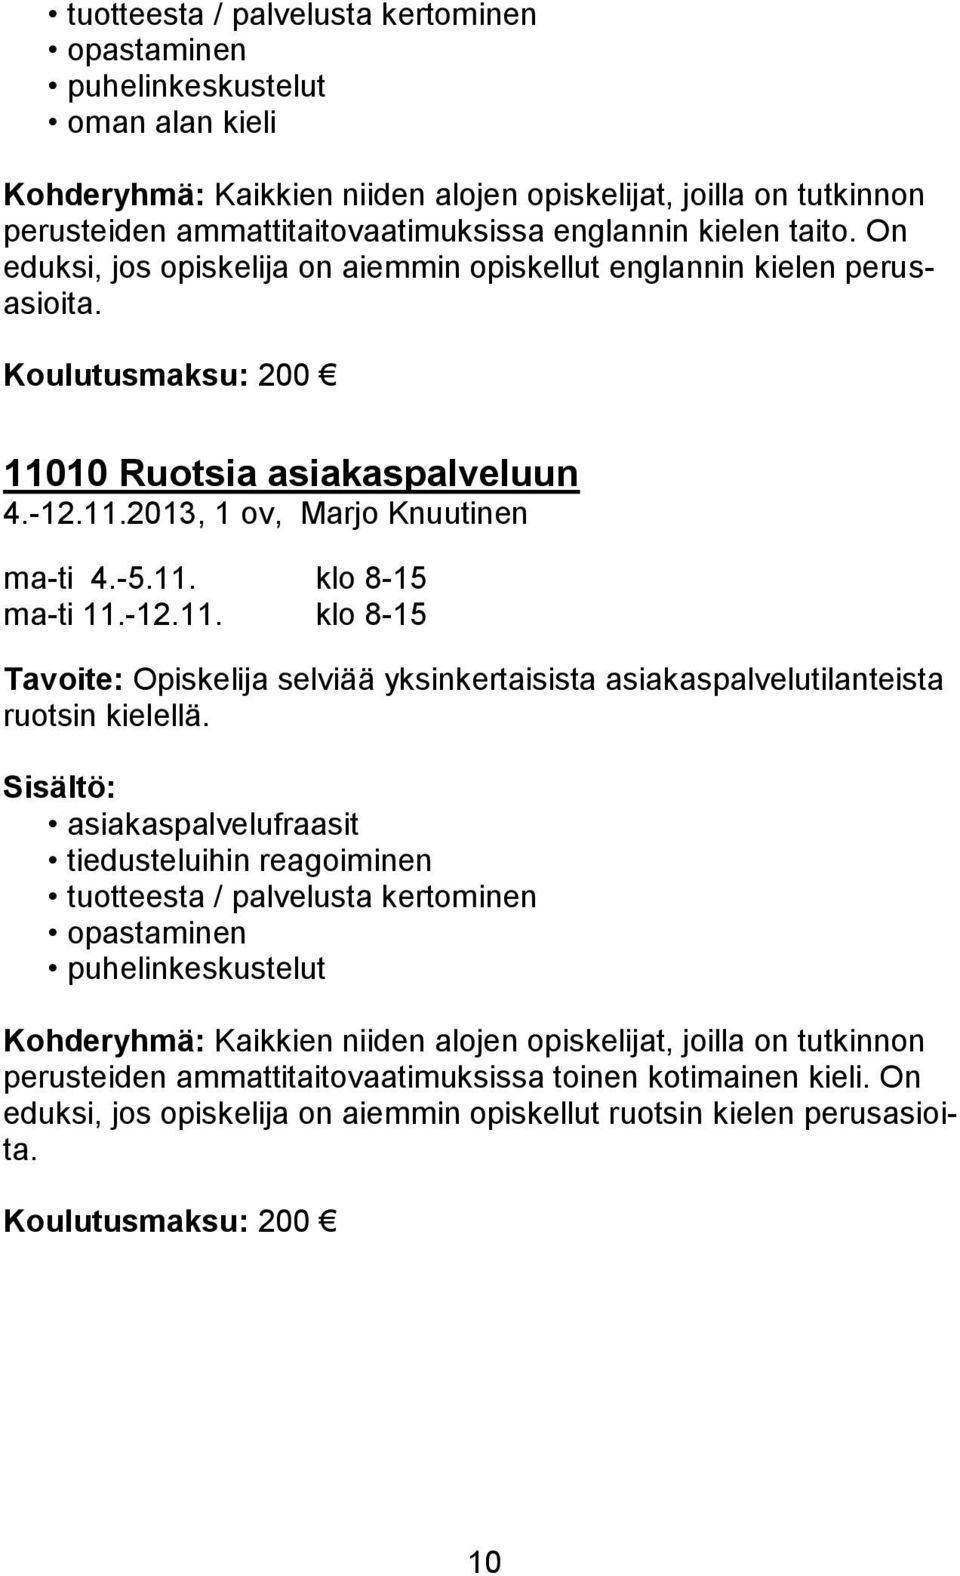 -12.11. klo 8-15 Tavoite: Opiskelija selviää yksinkertaisista asiakaspalvelutilanteista ruotsin kielellä.